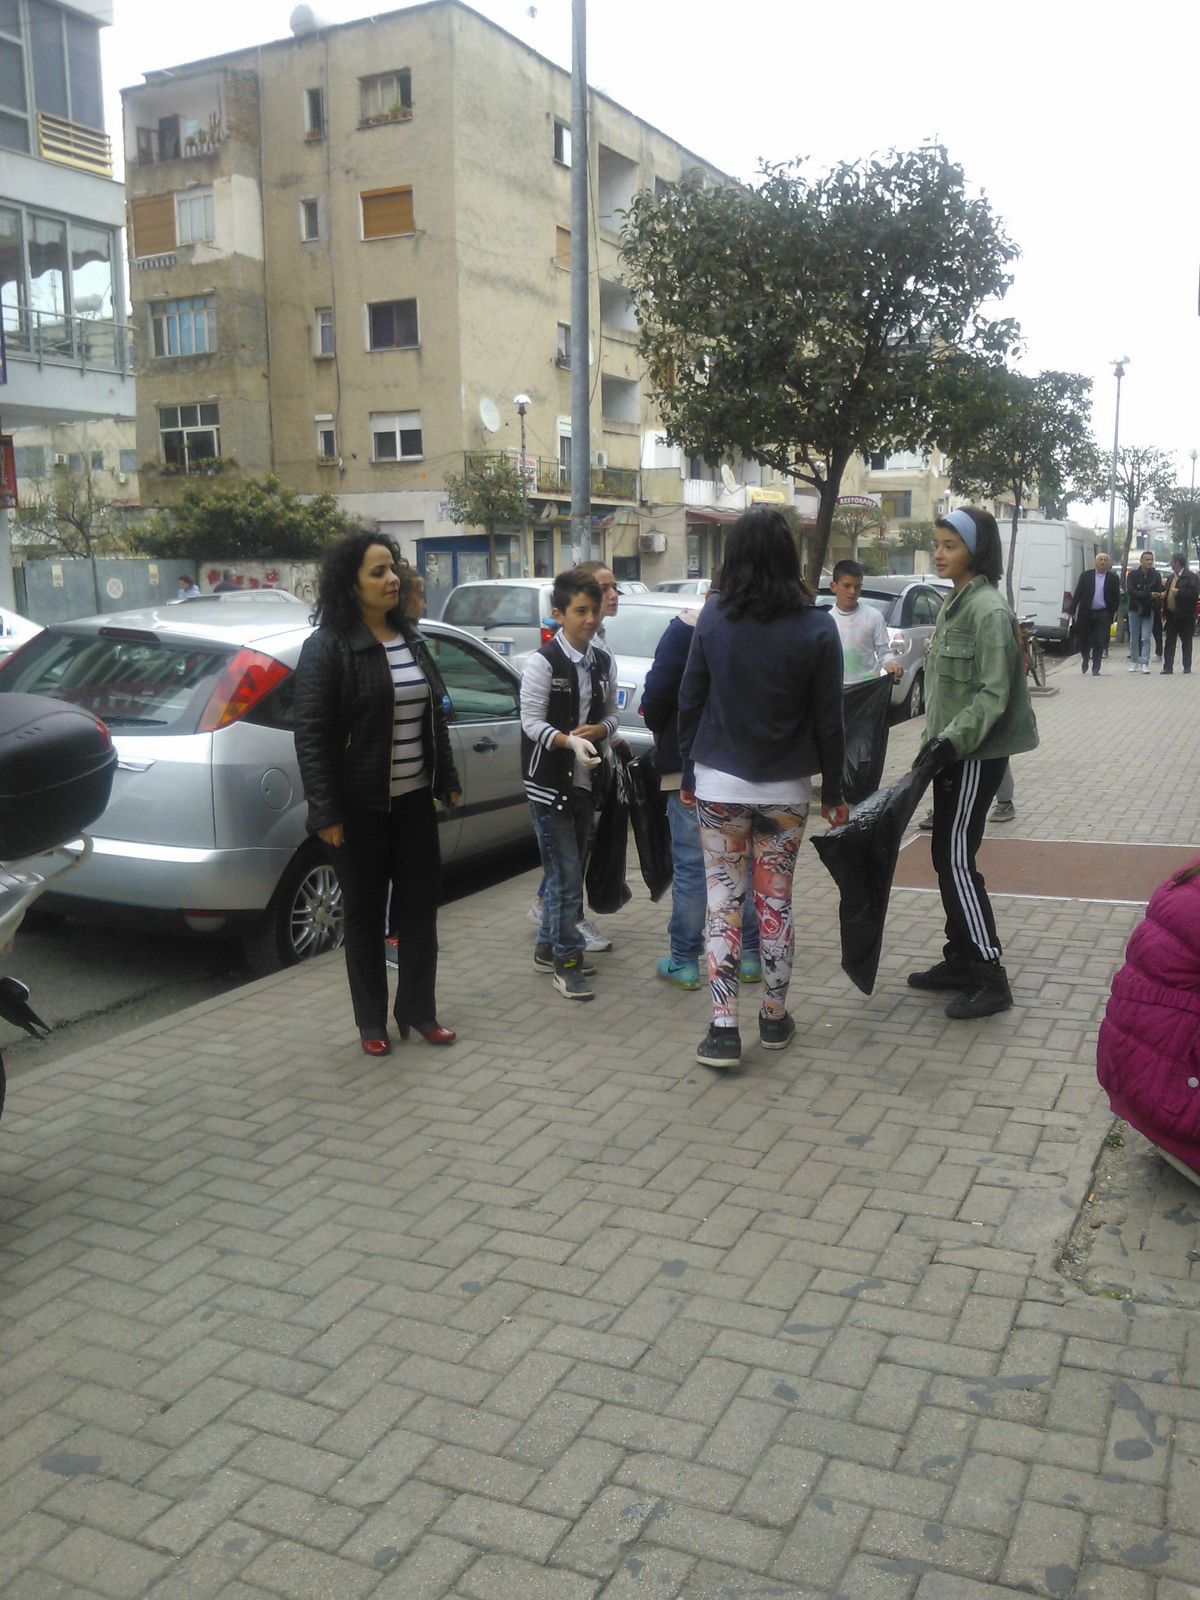 Fotolajm/ Nxënësit në Durrës pastrojnë qytetin pa doreza në duar